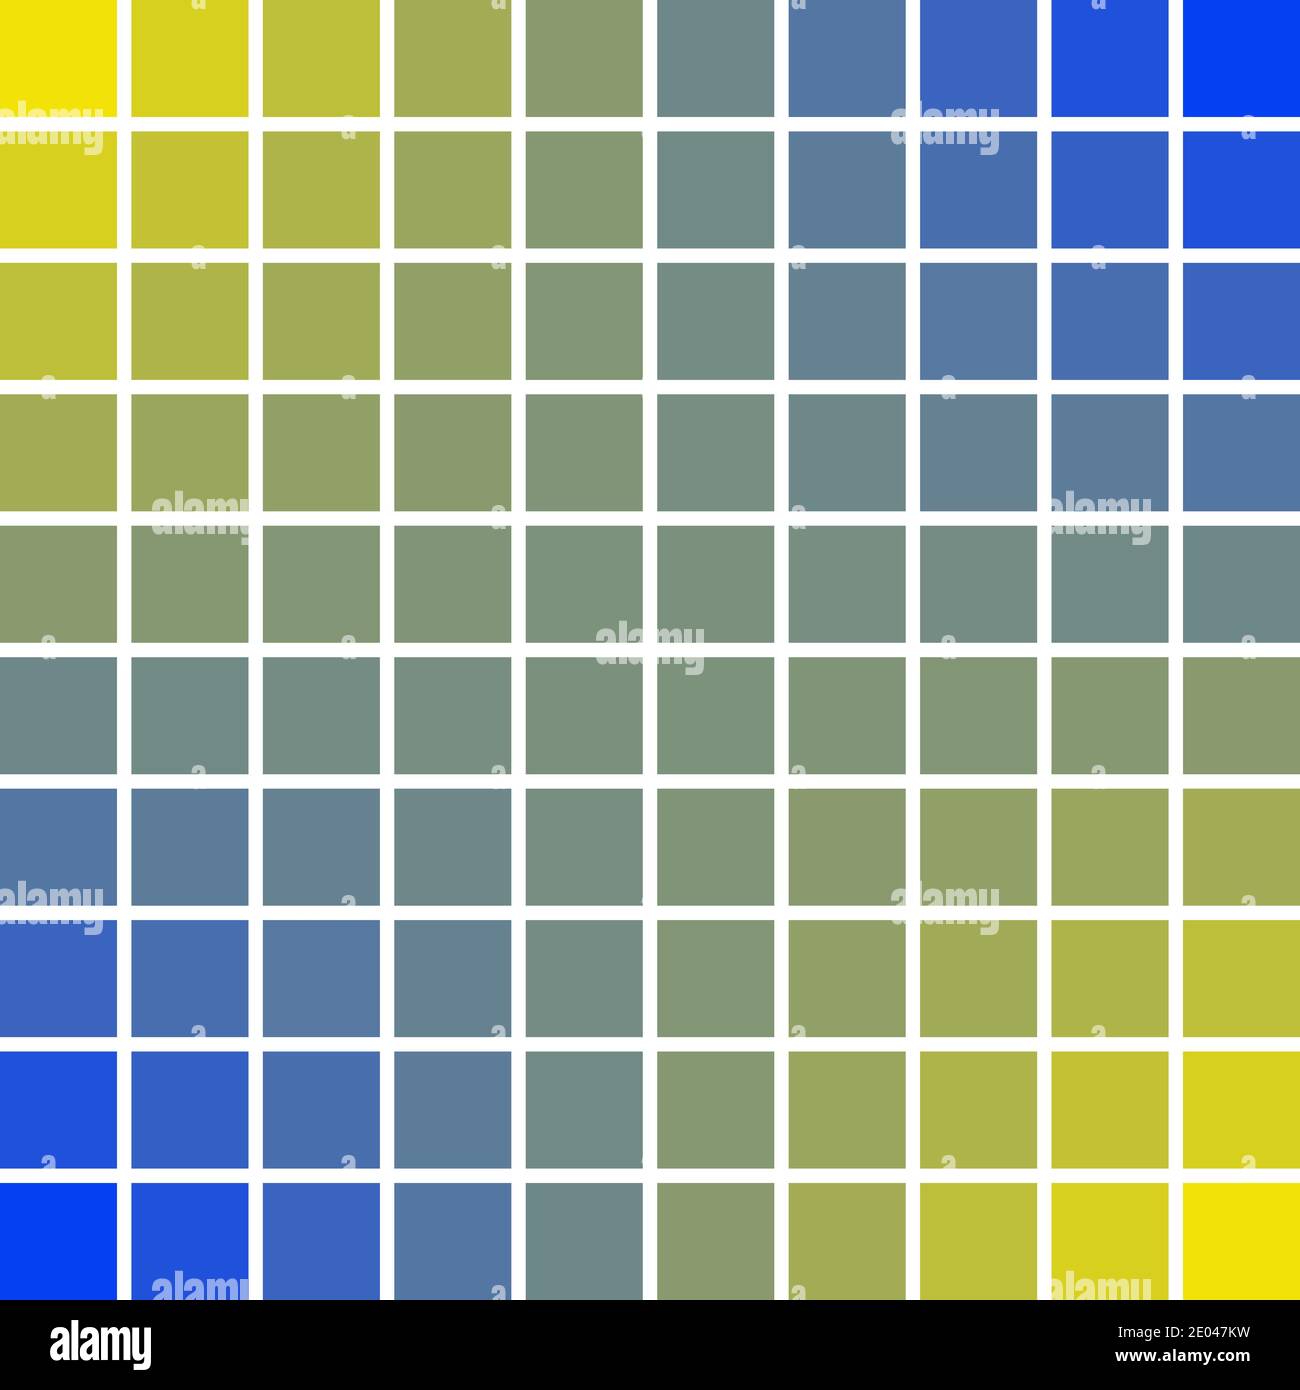 Panneaux pixels art carrés 10 x 10 couleur bleue et jaune du soleil et des vagues de mer, illustration vectorielle pixel art couleurs paix bonne et prospérité. Illustration de Vecteur